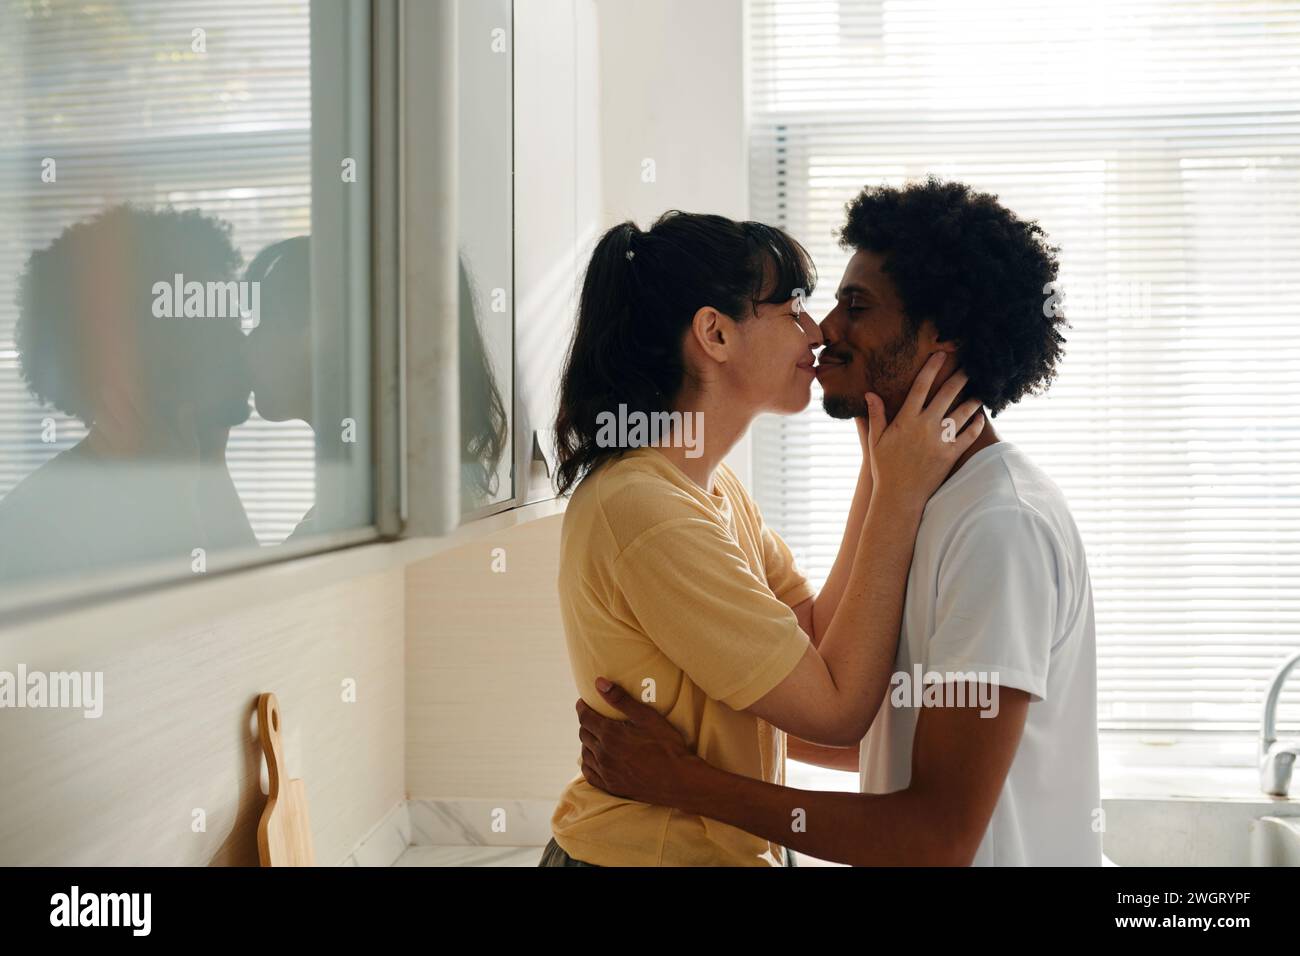 Jeune mari et femme interculturels affectueux en vêtements de détente s'embrassant les uns les autres tandis que la femme gardant les mains du cou de l'homme Banque D'Images